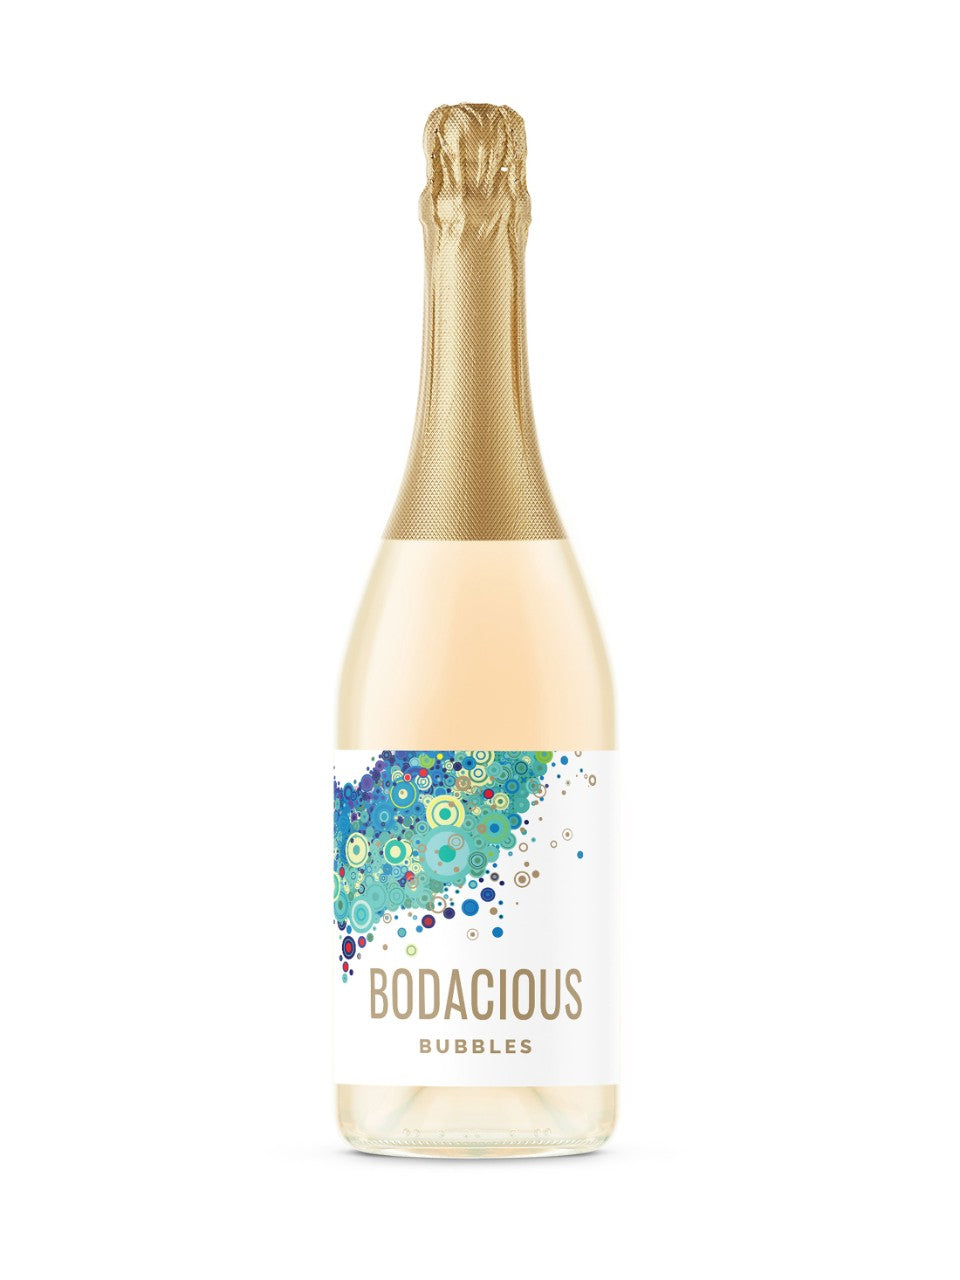 Bodacious Bubbles 750 ml bottle